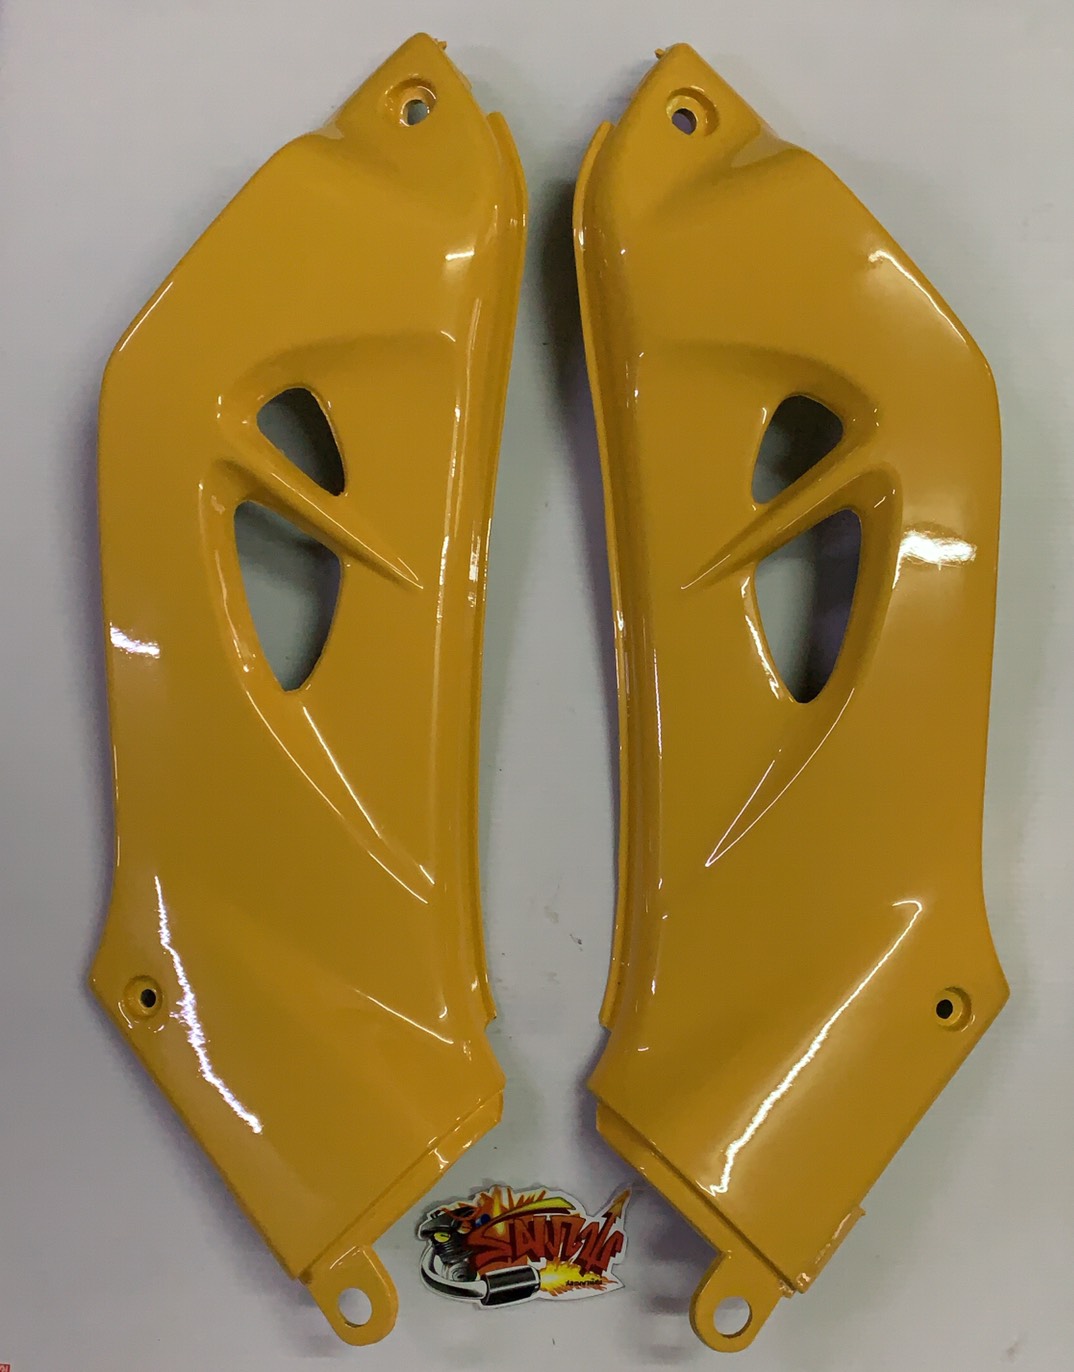 คอนโซลข้าง ไนซ์100/110-รุ่นแรก (รุ่นท้ายแบบเวฟ) สีเหลือง เทียม ขายเป็นคู่